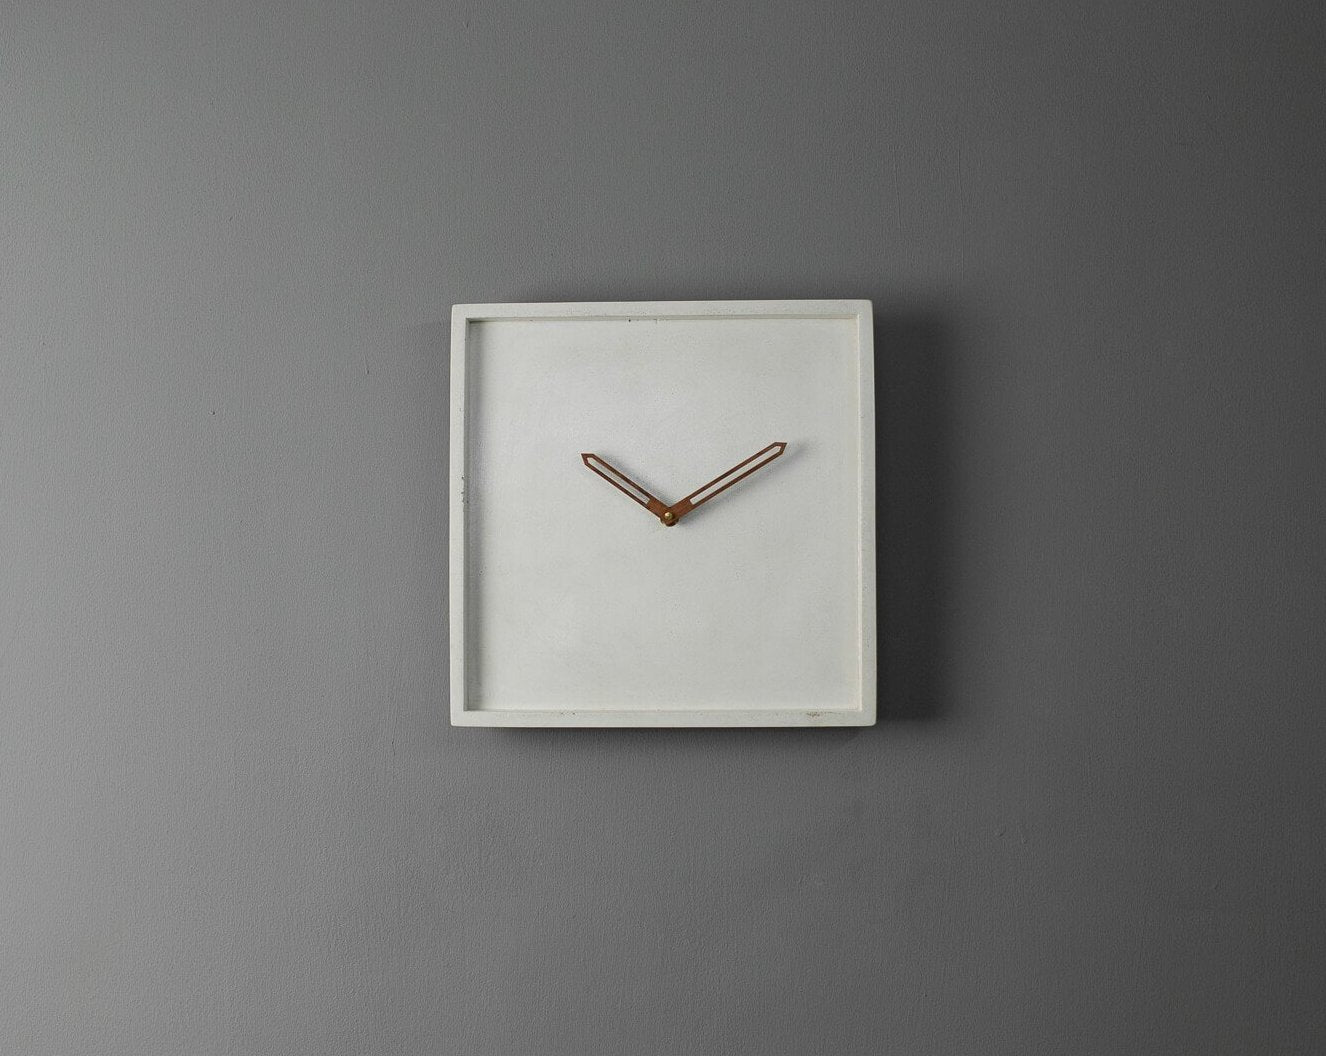 Concrete Square Wall Clock White-Eliteearth